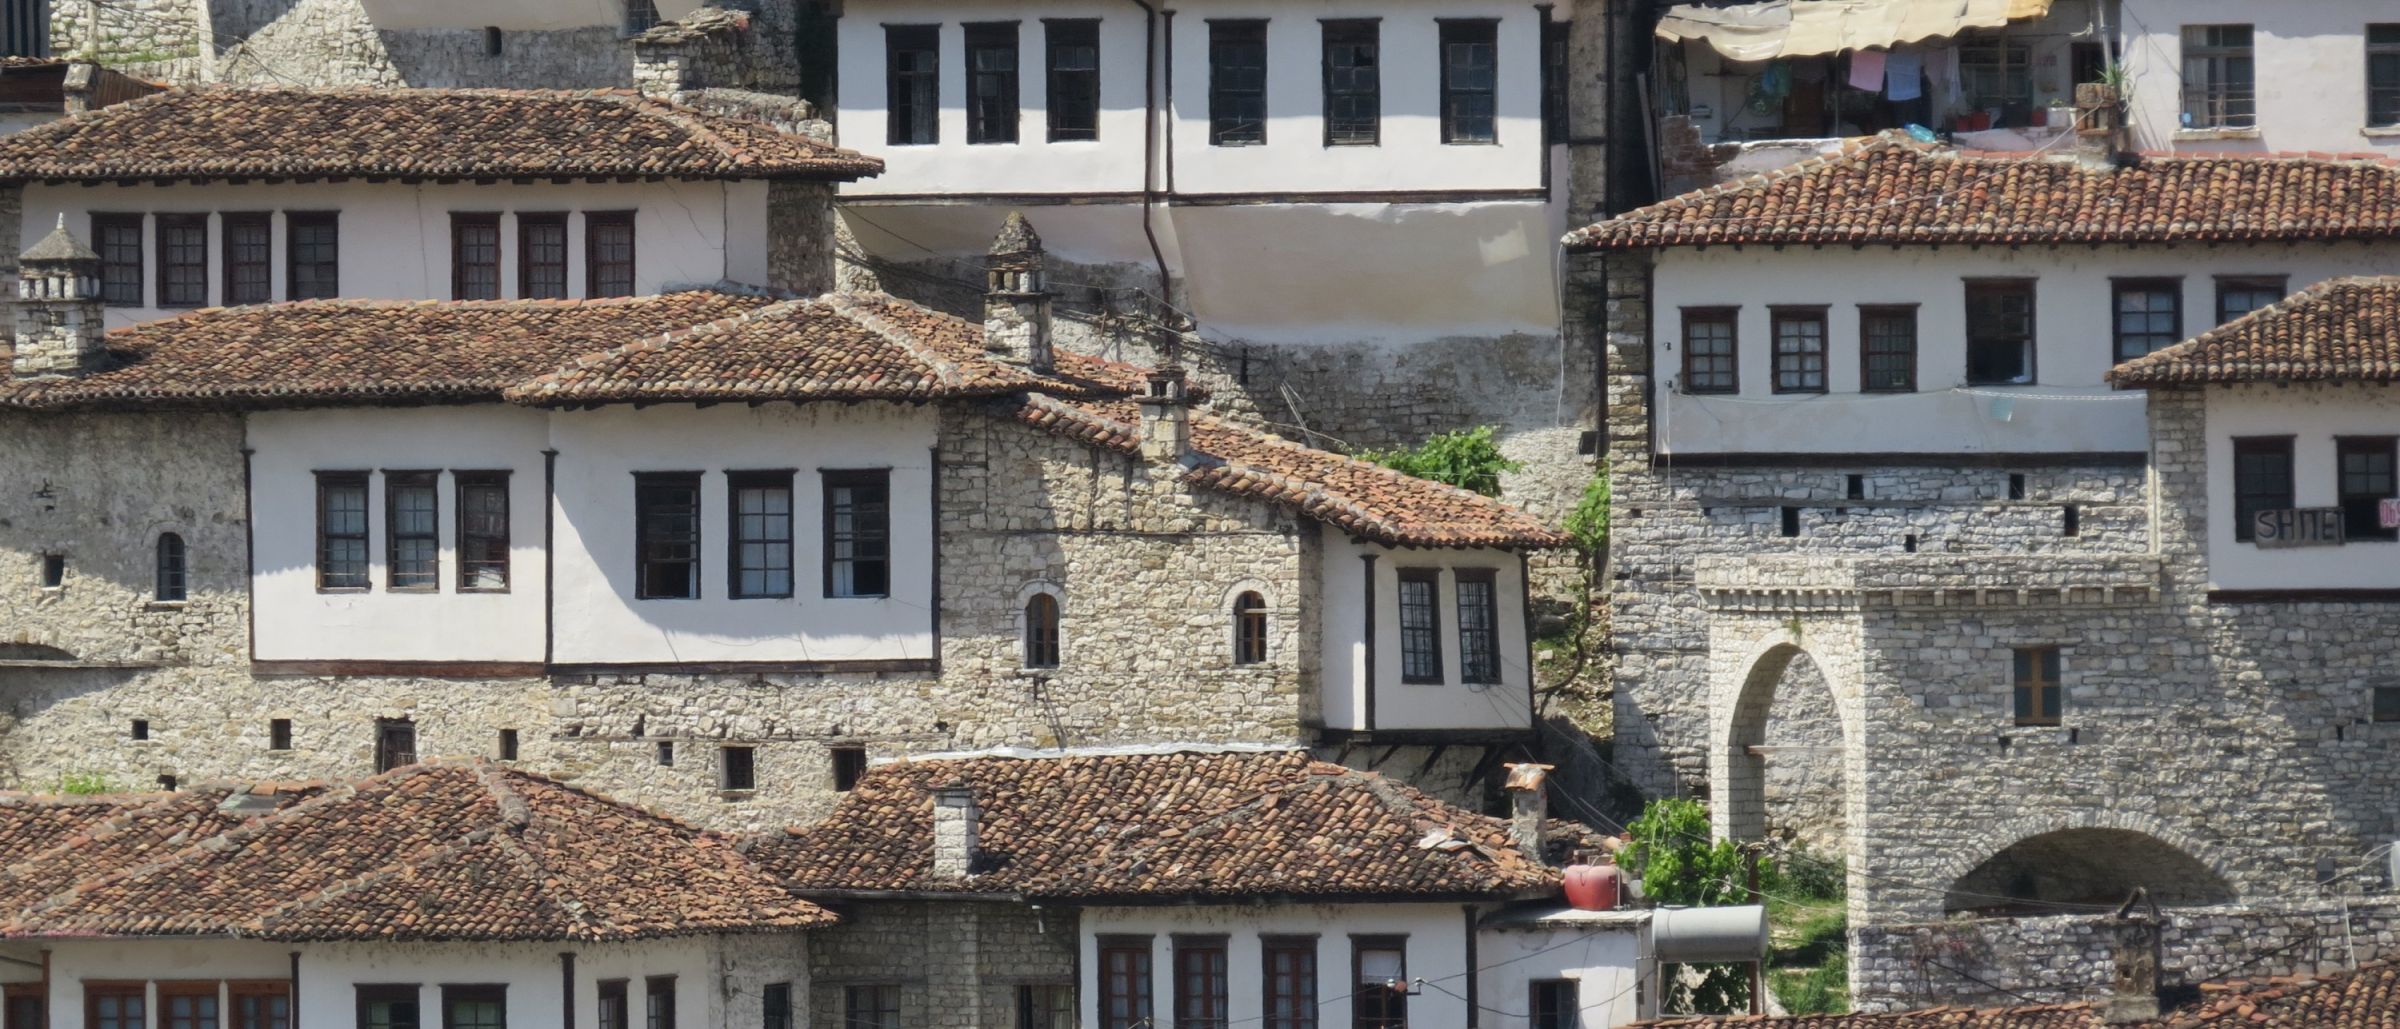 Typische Bruchsteinarchitektur in den Bergen Albaniens